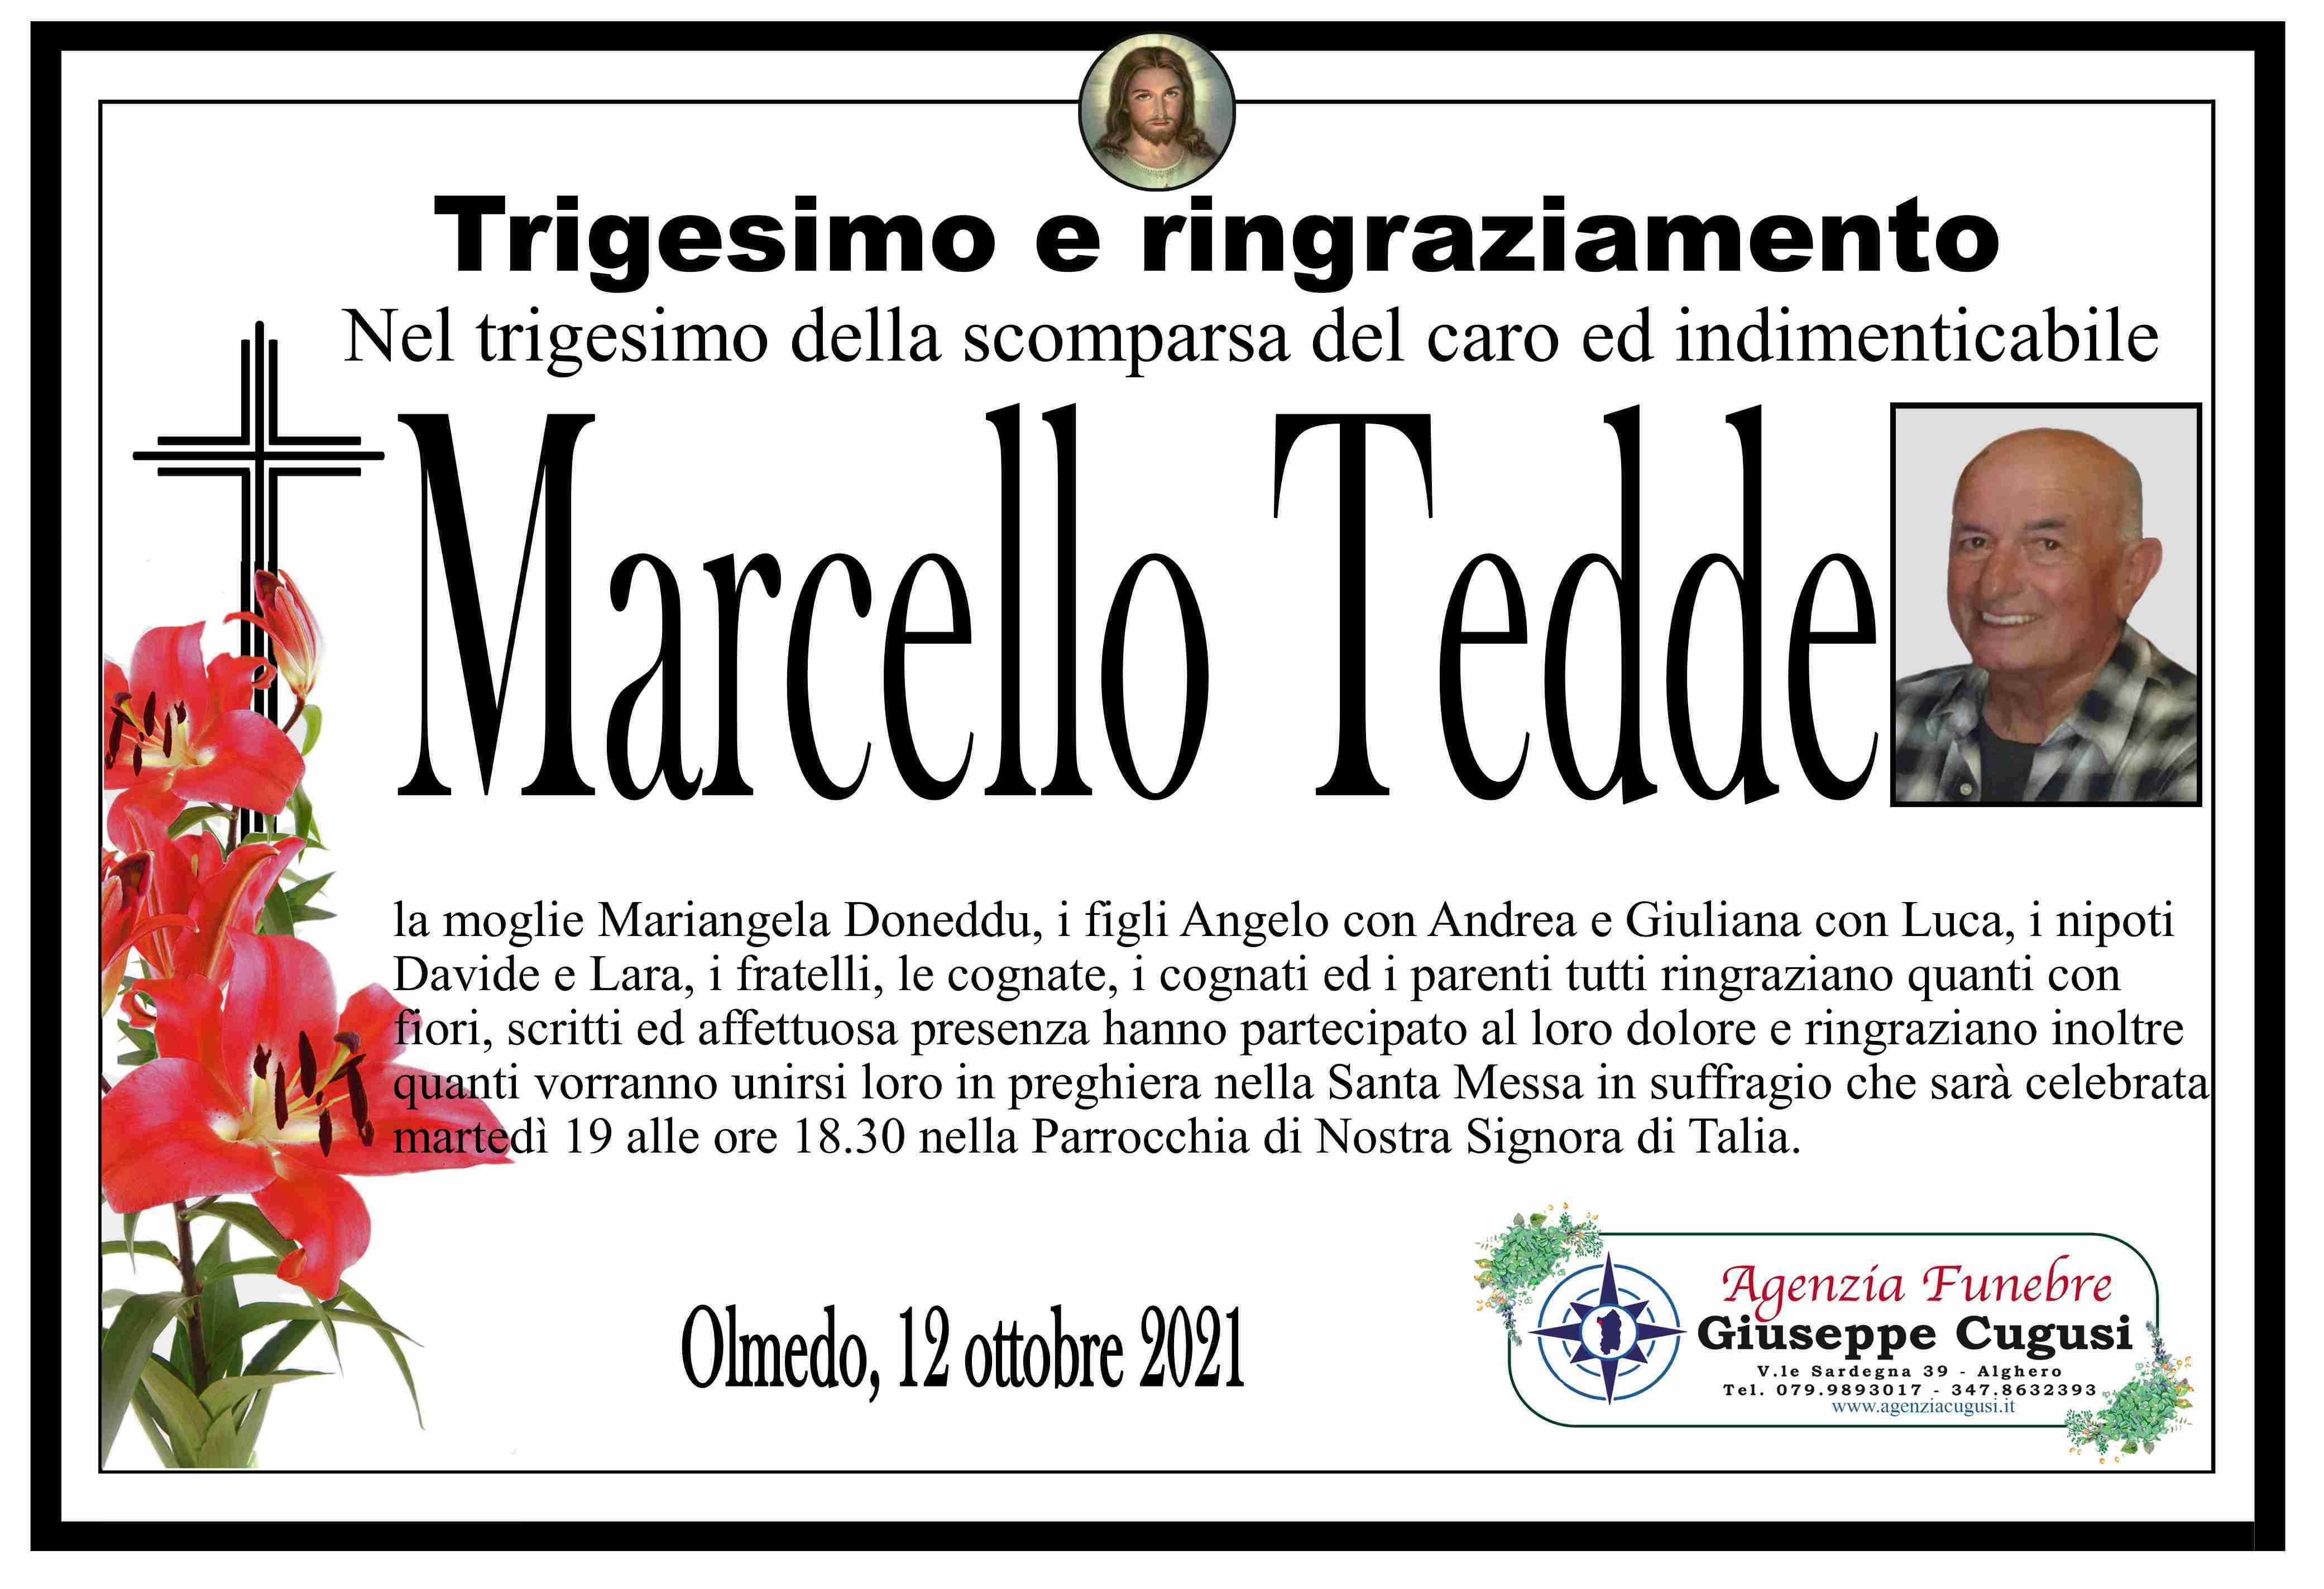 Marcello Tedde